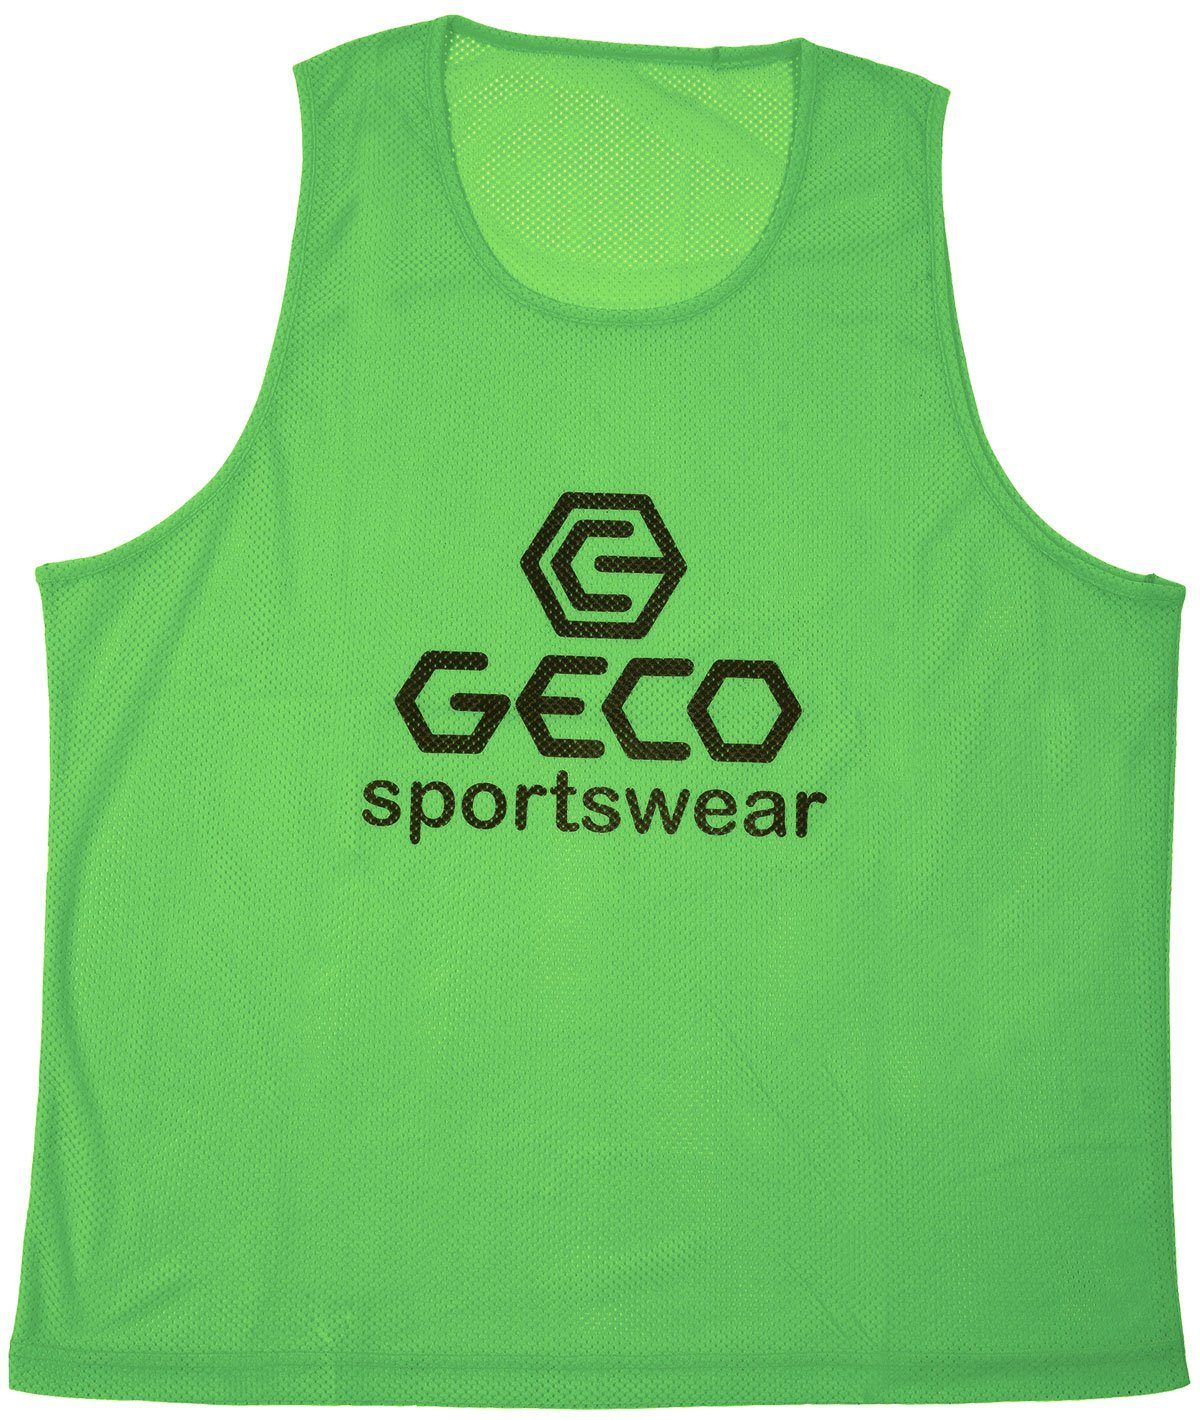 Trainingsleibchen Markierungshemdchen Neon Sportswear Geco Trainingsleibchen Geco Farben Neon grün